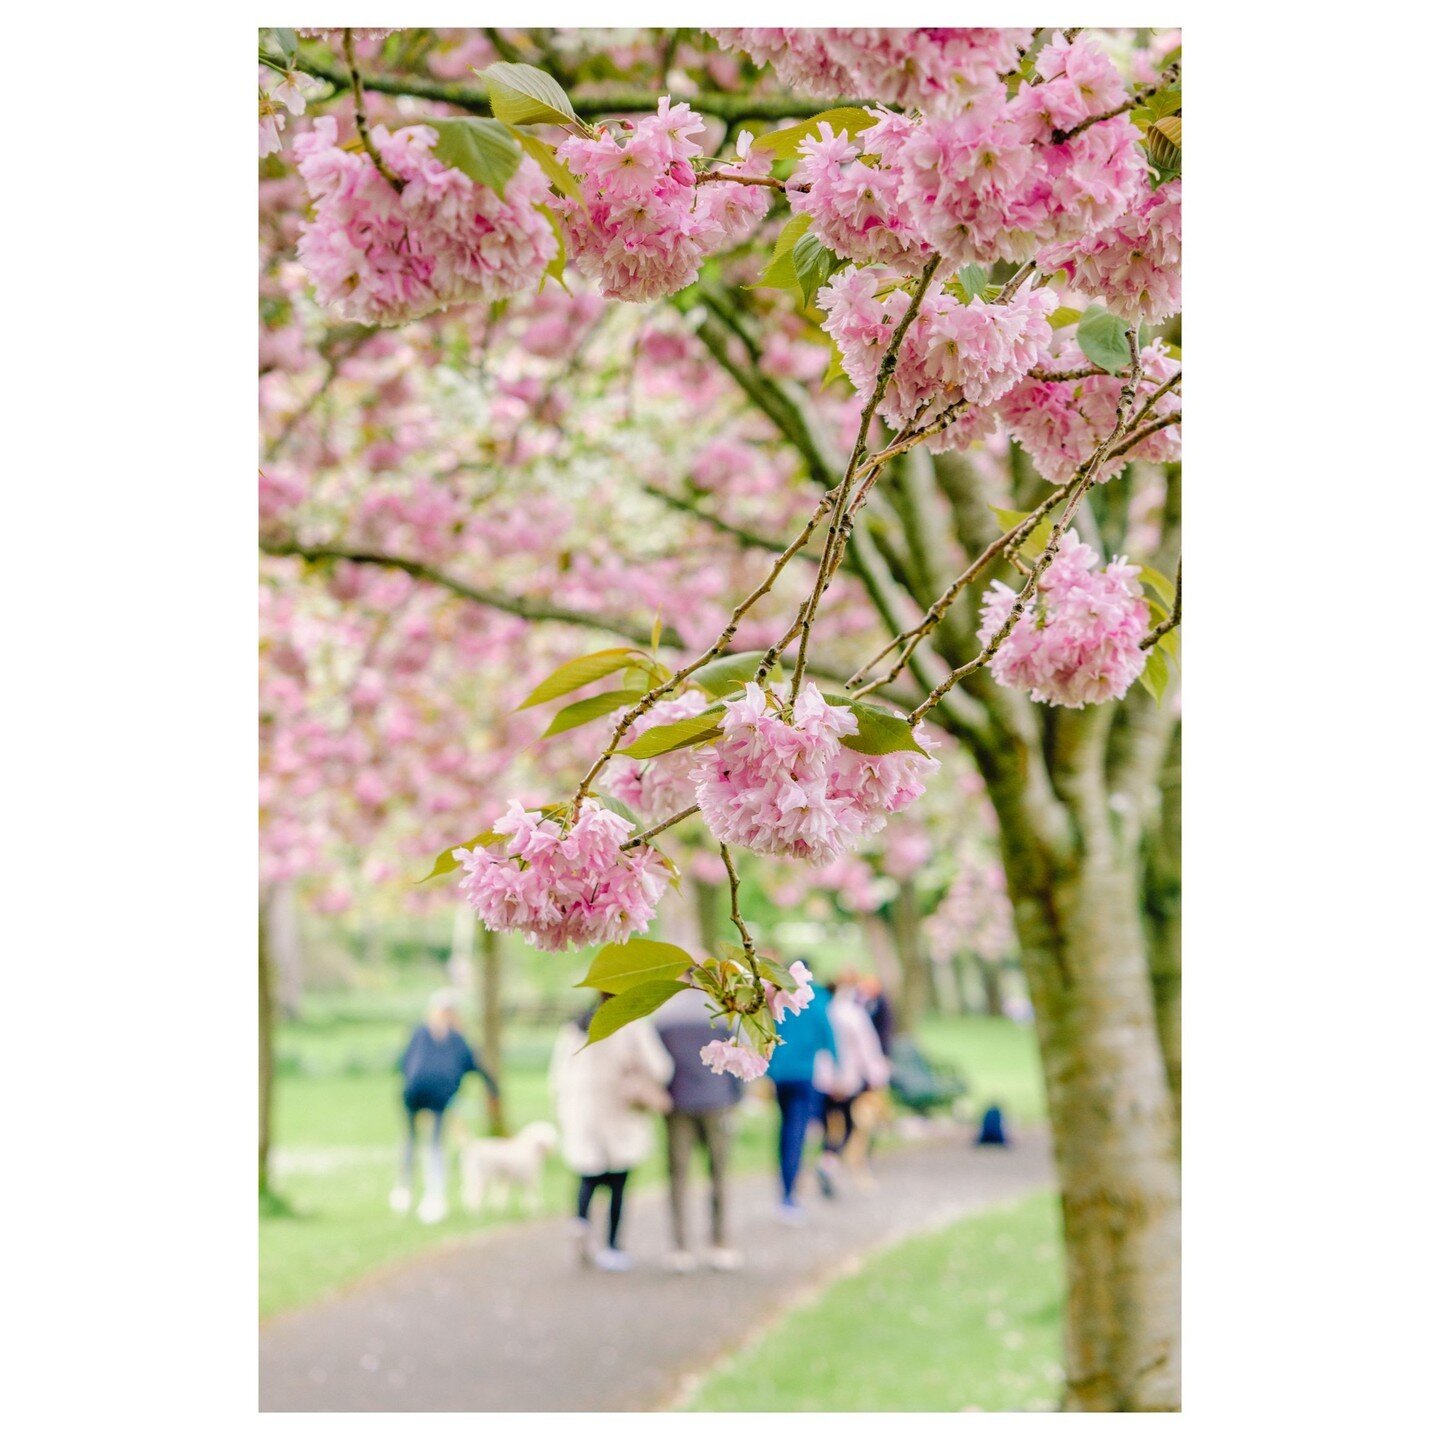 Spring has Sprung in Dublin! 🌸🌷 Went to see the gorgeous Cherry Blossoms in full bloom at Herbert Park this weekend. #CherryBlossoms #Dublin #HerbertPark #SpringVibes #FlowerPower #lovedublin #lovindublin #sakura #CherryBlossomSeason #PinkPetals #B